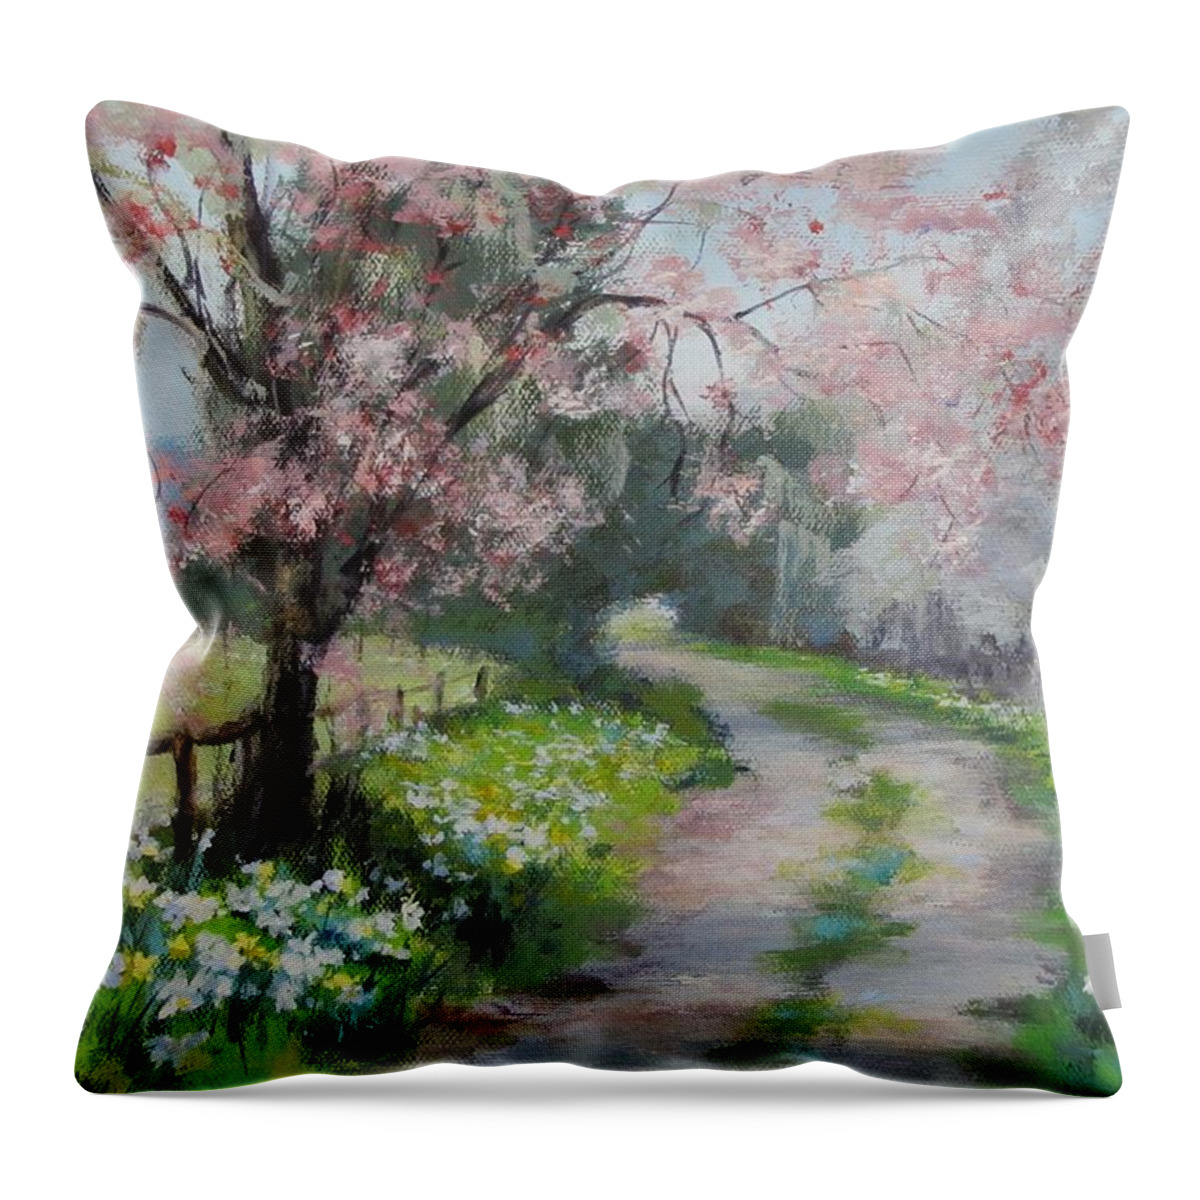 Original Throw Pillow featuring the painting Spring Walk by Karen Ilari